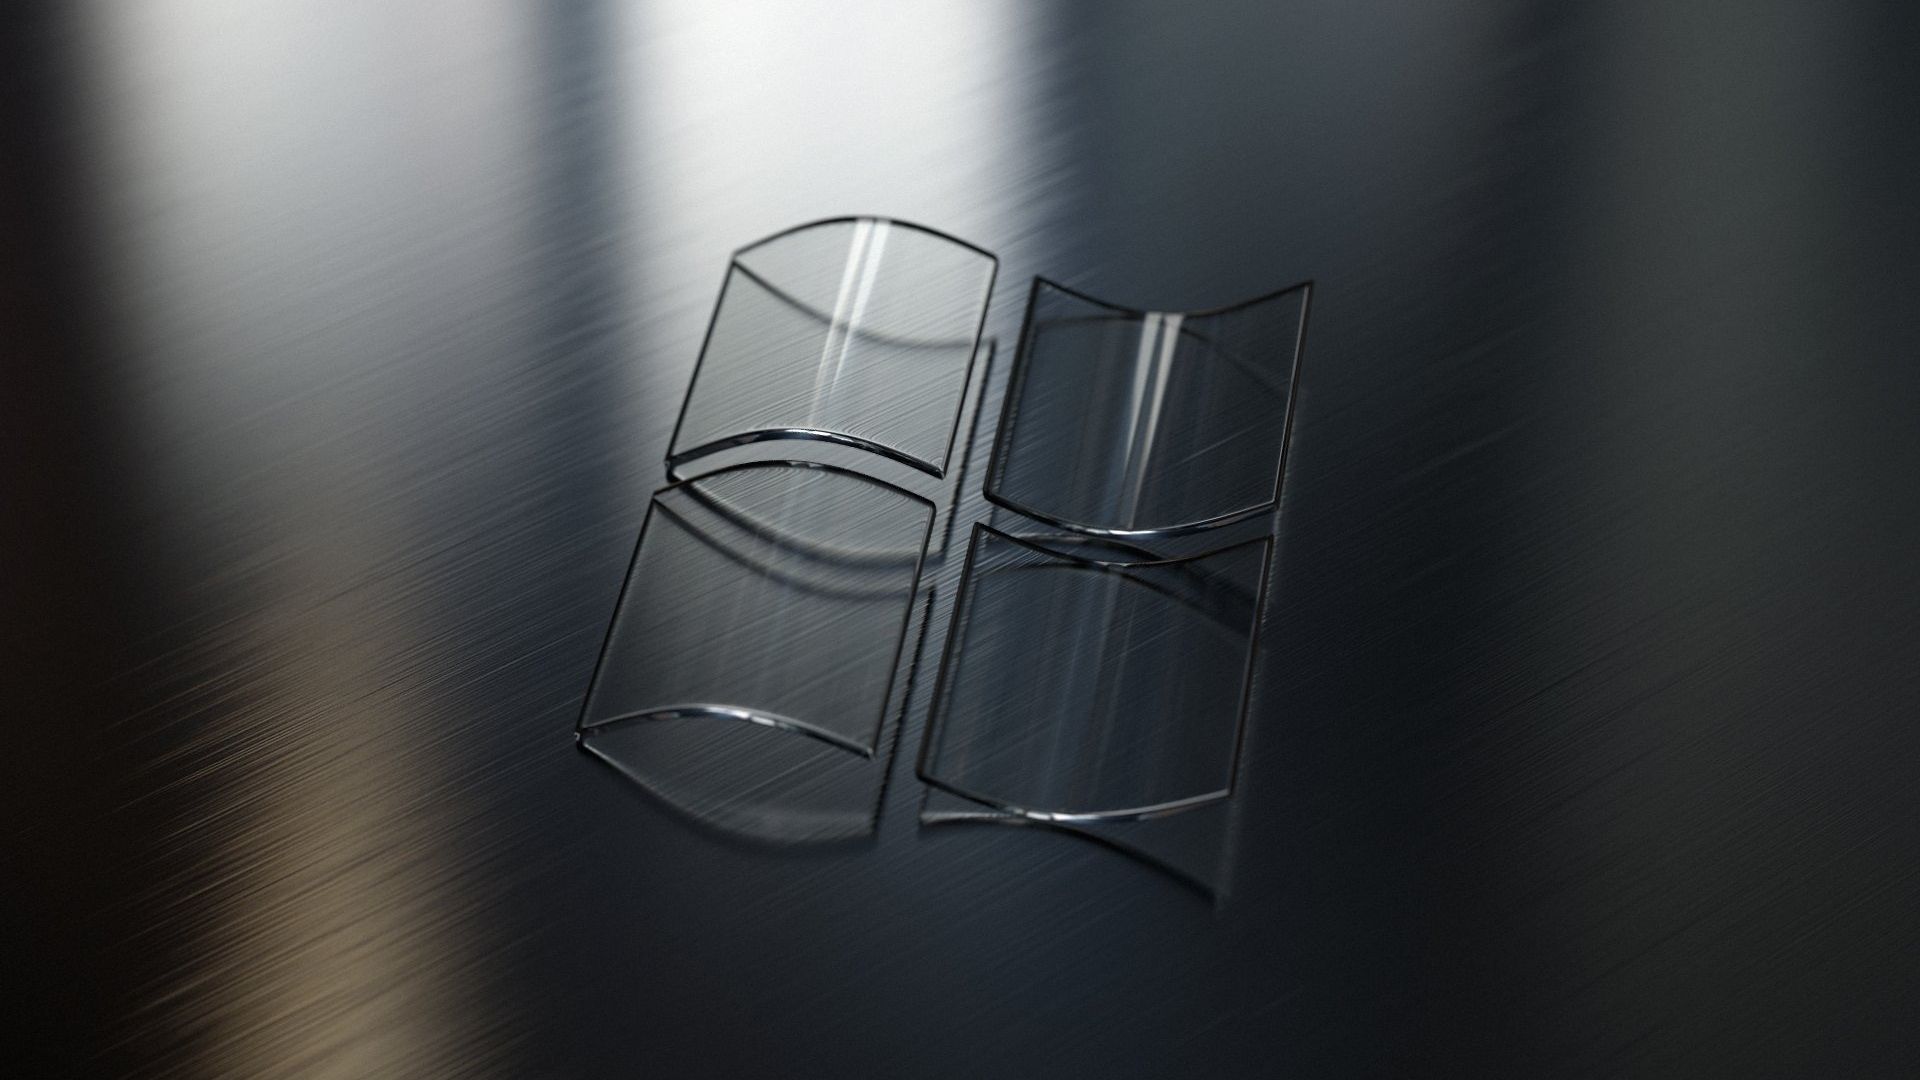 دانلود Wallpaper نماد ویندوز با ساختار جالب شیشه ای برای لپتاپ